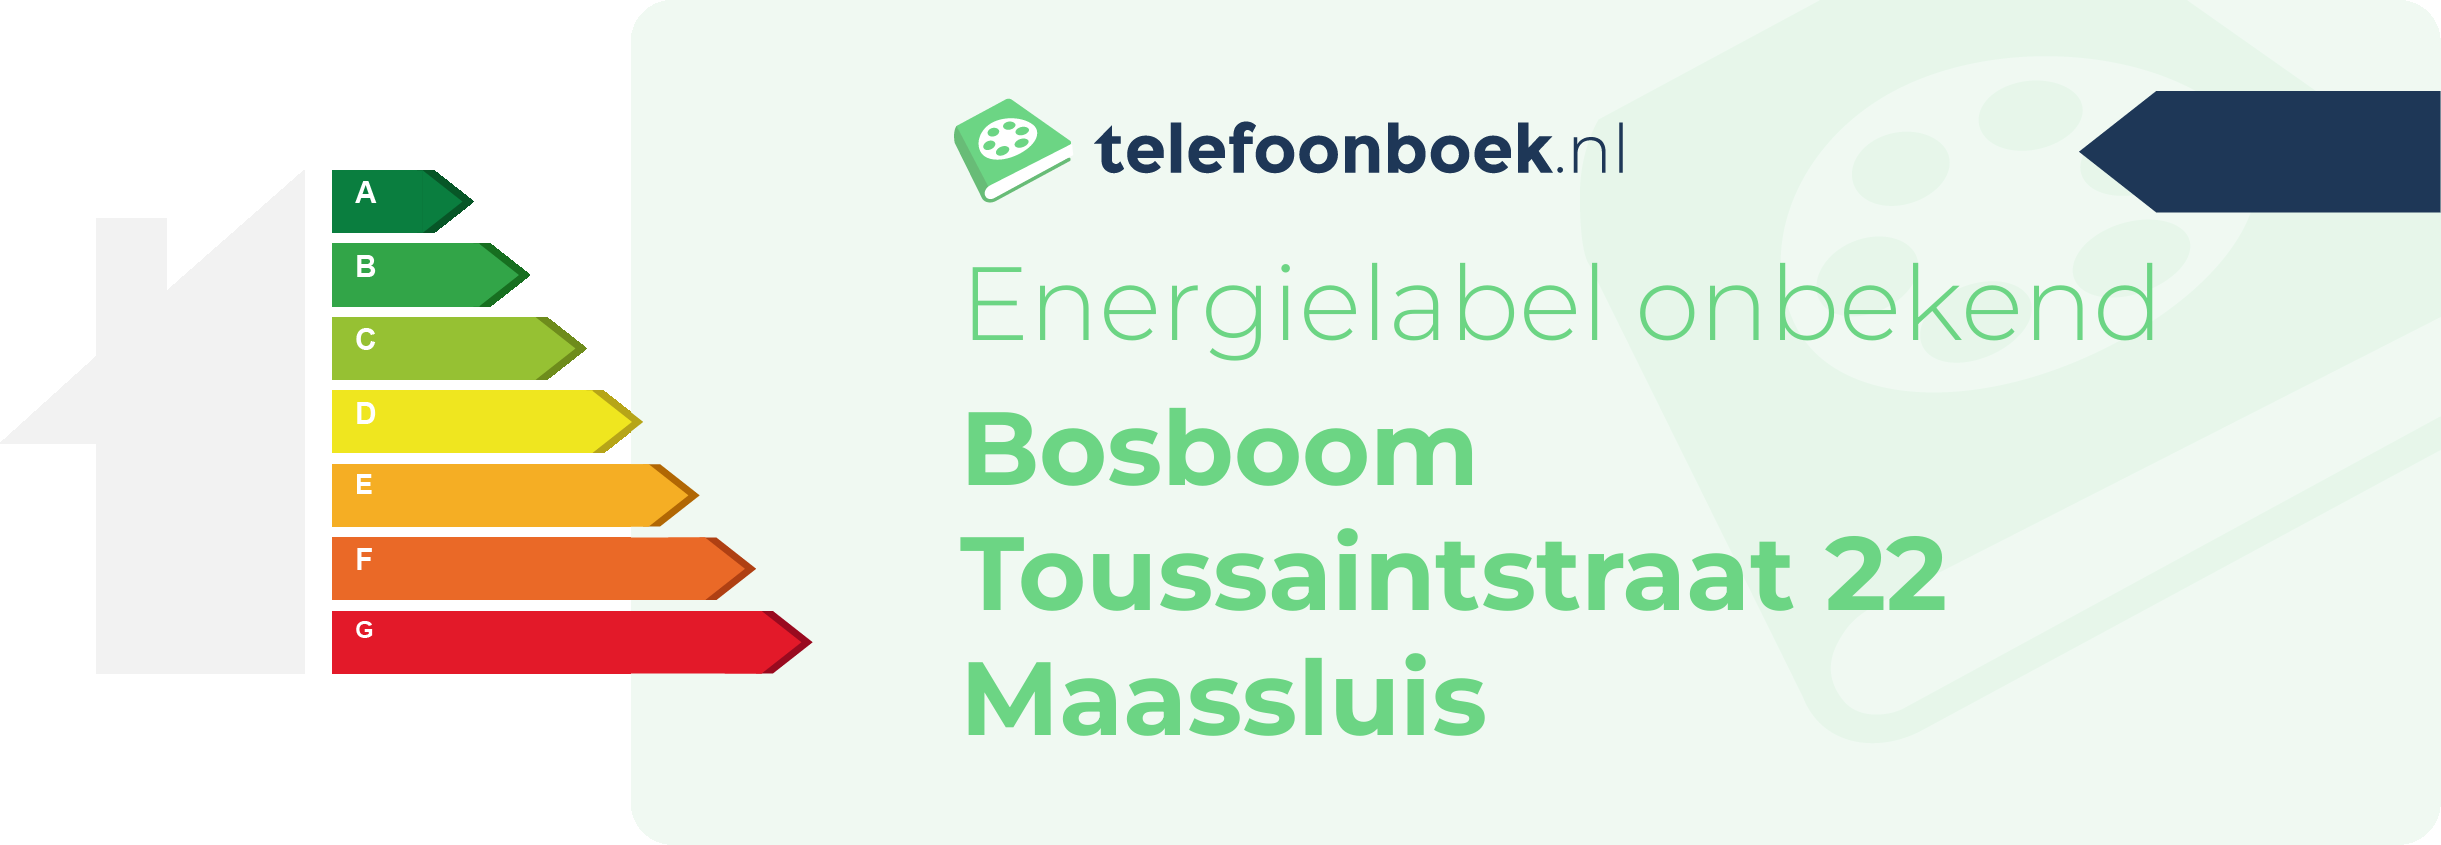 Energielabel Bosboom Toussaintstraat 22 Maassluis